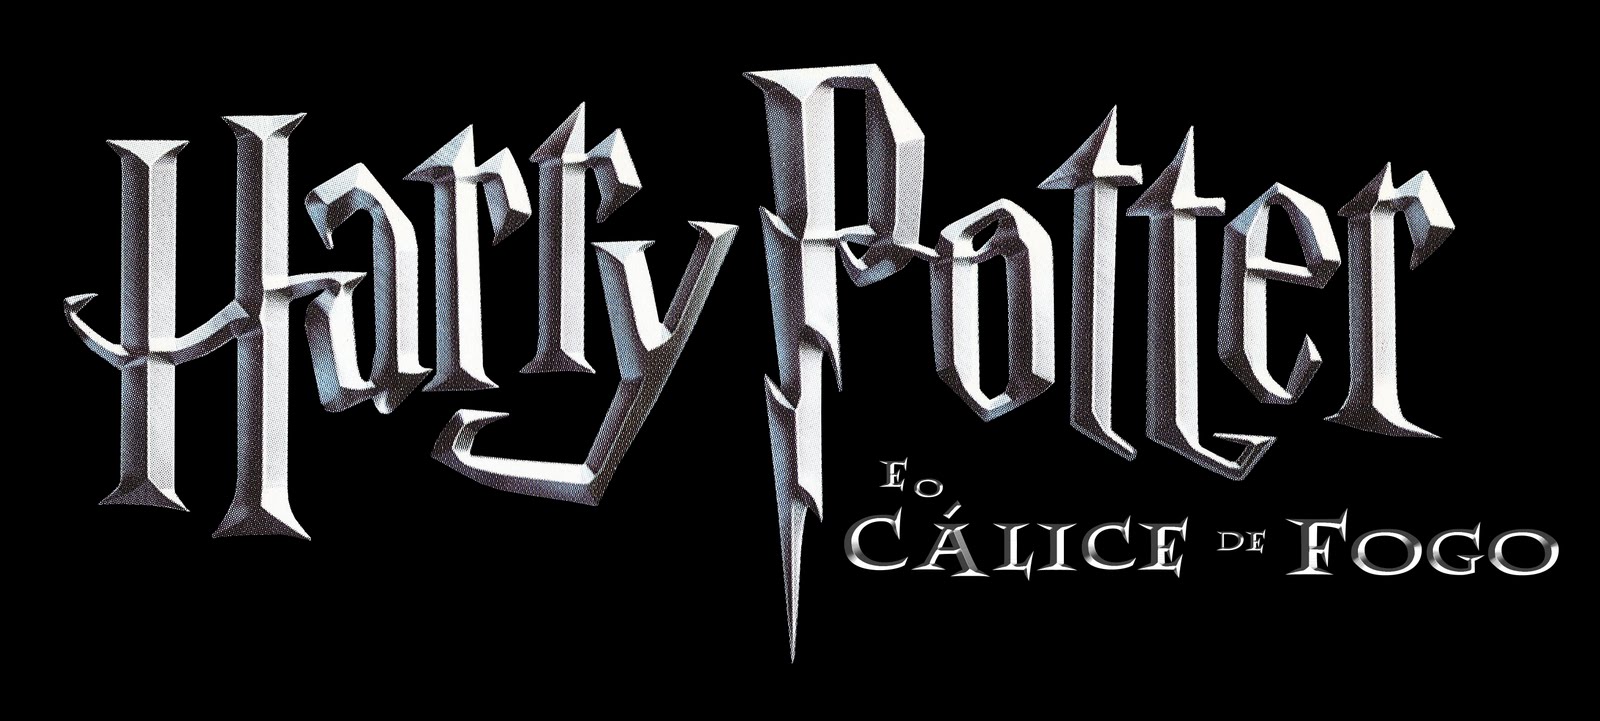 Harry Potter - e o cálice de fogo Harry+Potter+e+o+C%25C3%25A1lice+de+Fogo+Logo